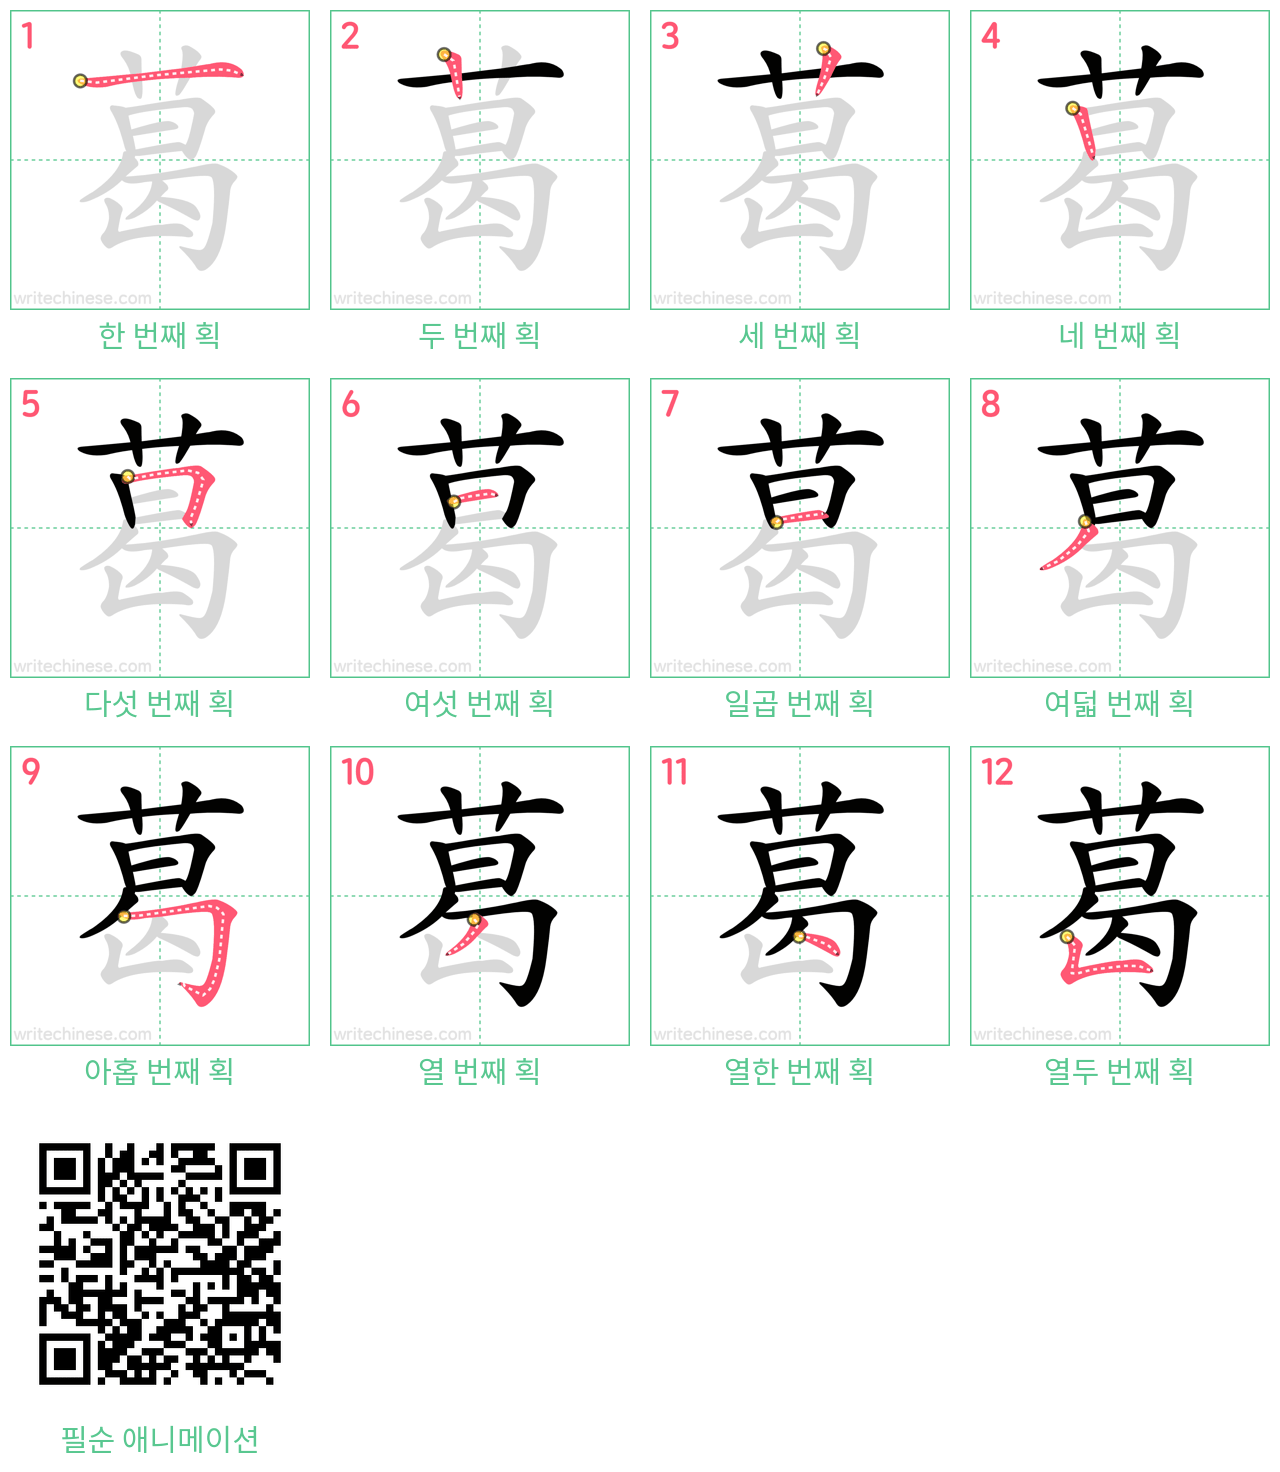 葛 step-by-step stroke order diagrams